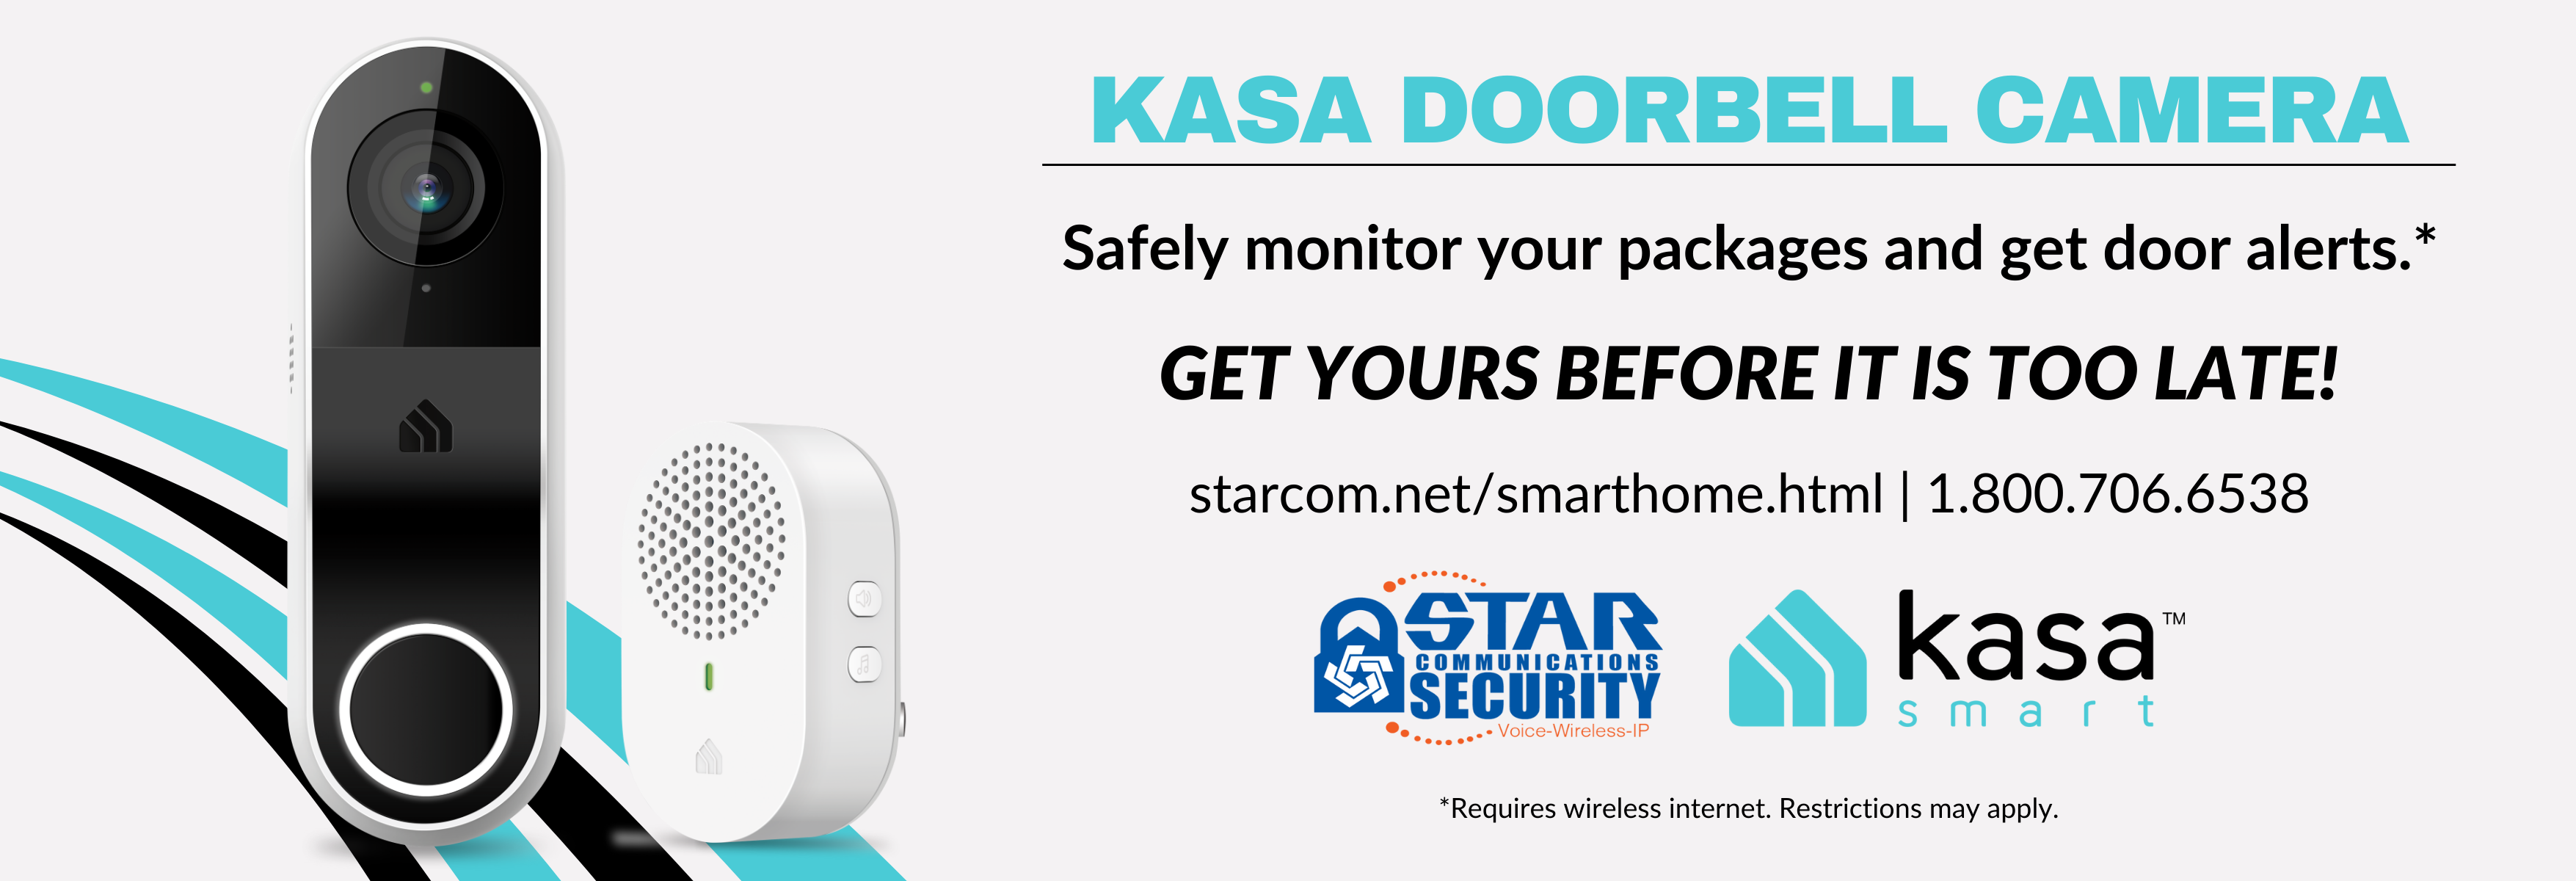 Kasa Doorbell